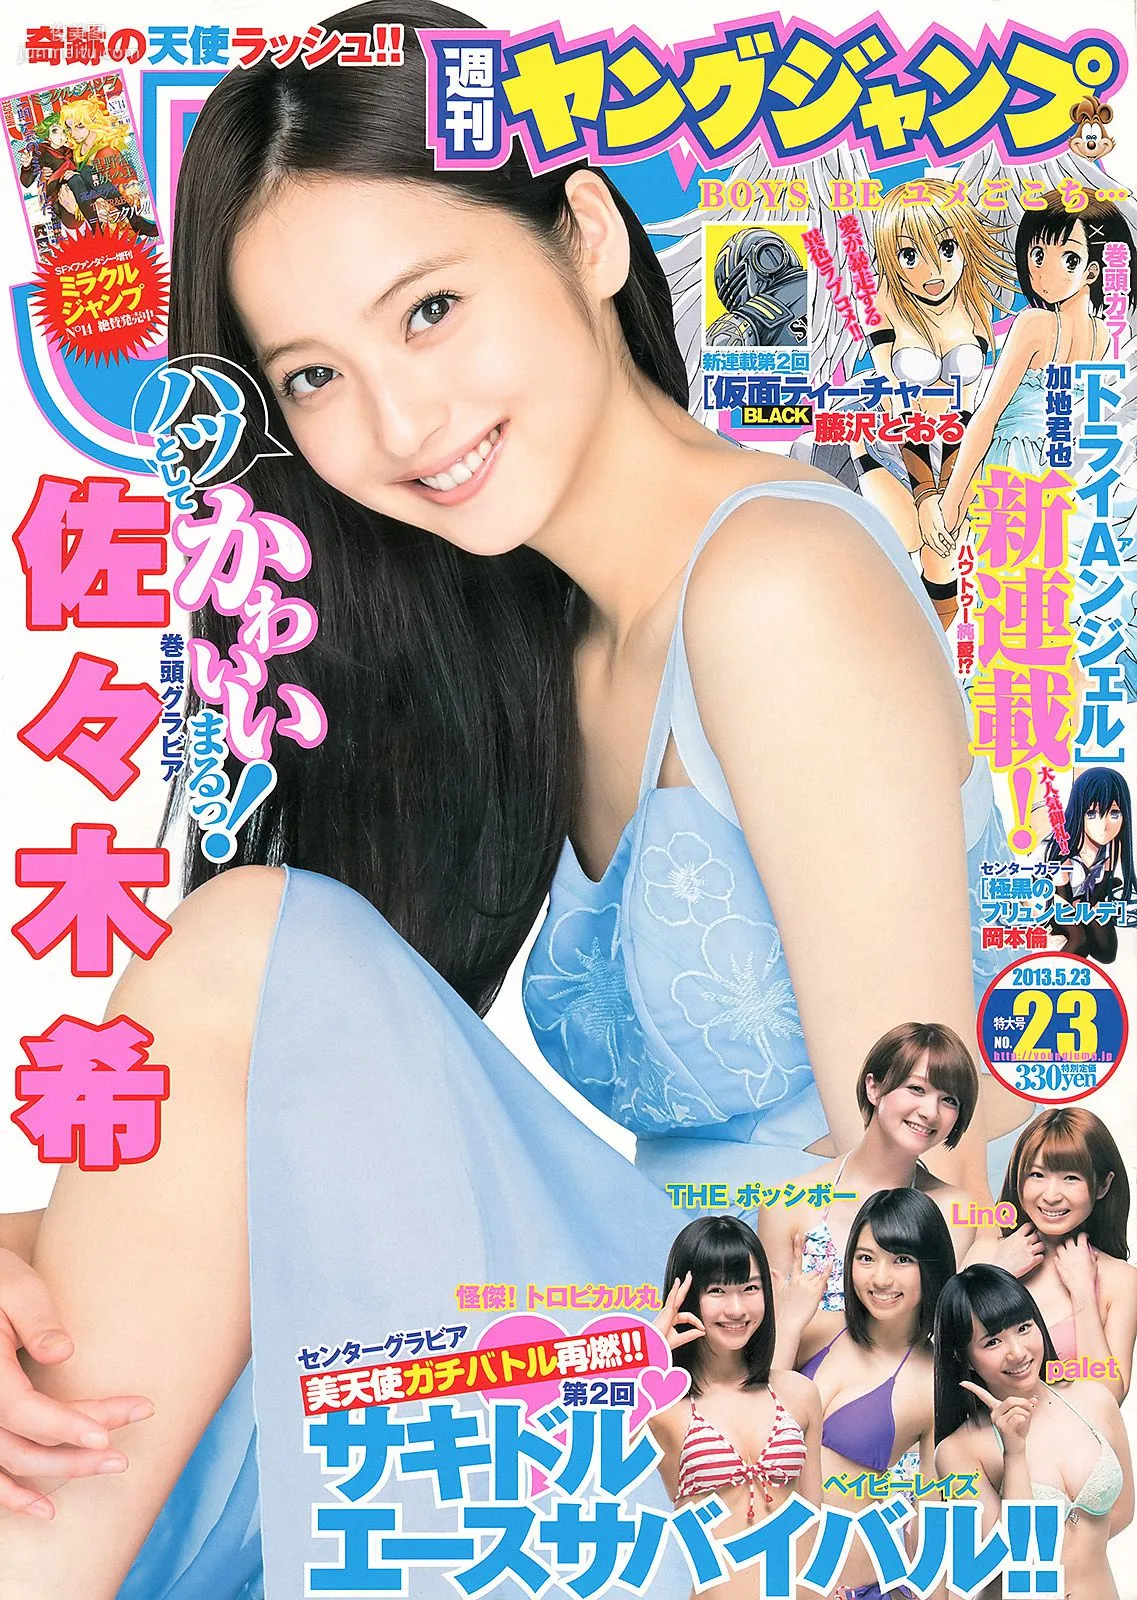 佐々木希 サキドルエースSURVIVAL Season2 [Weekly Young Jump] 2013年No.23 写真杂志1